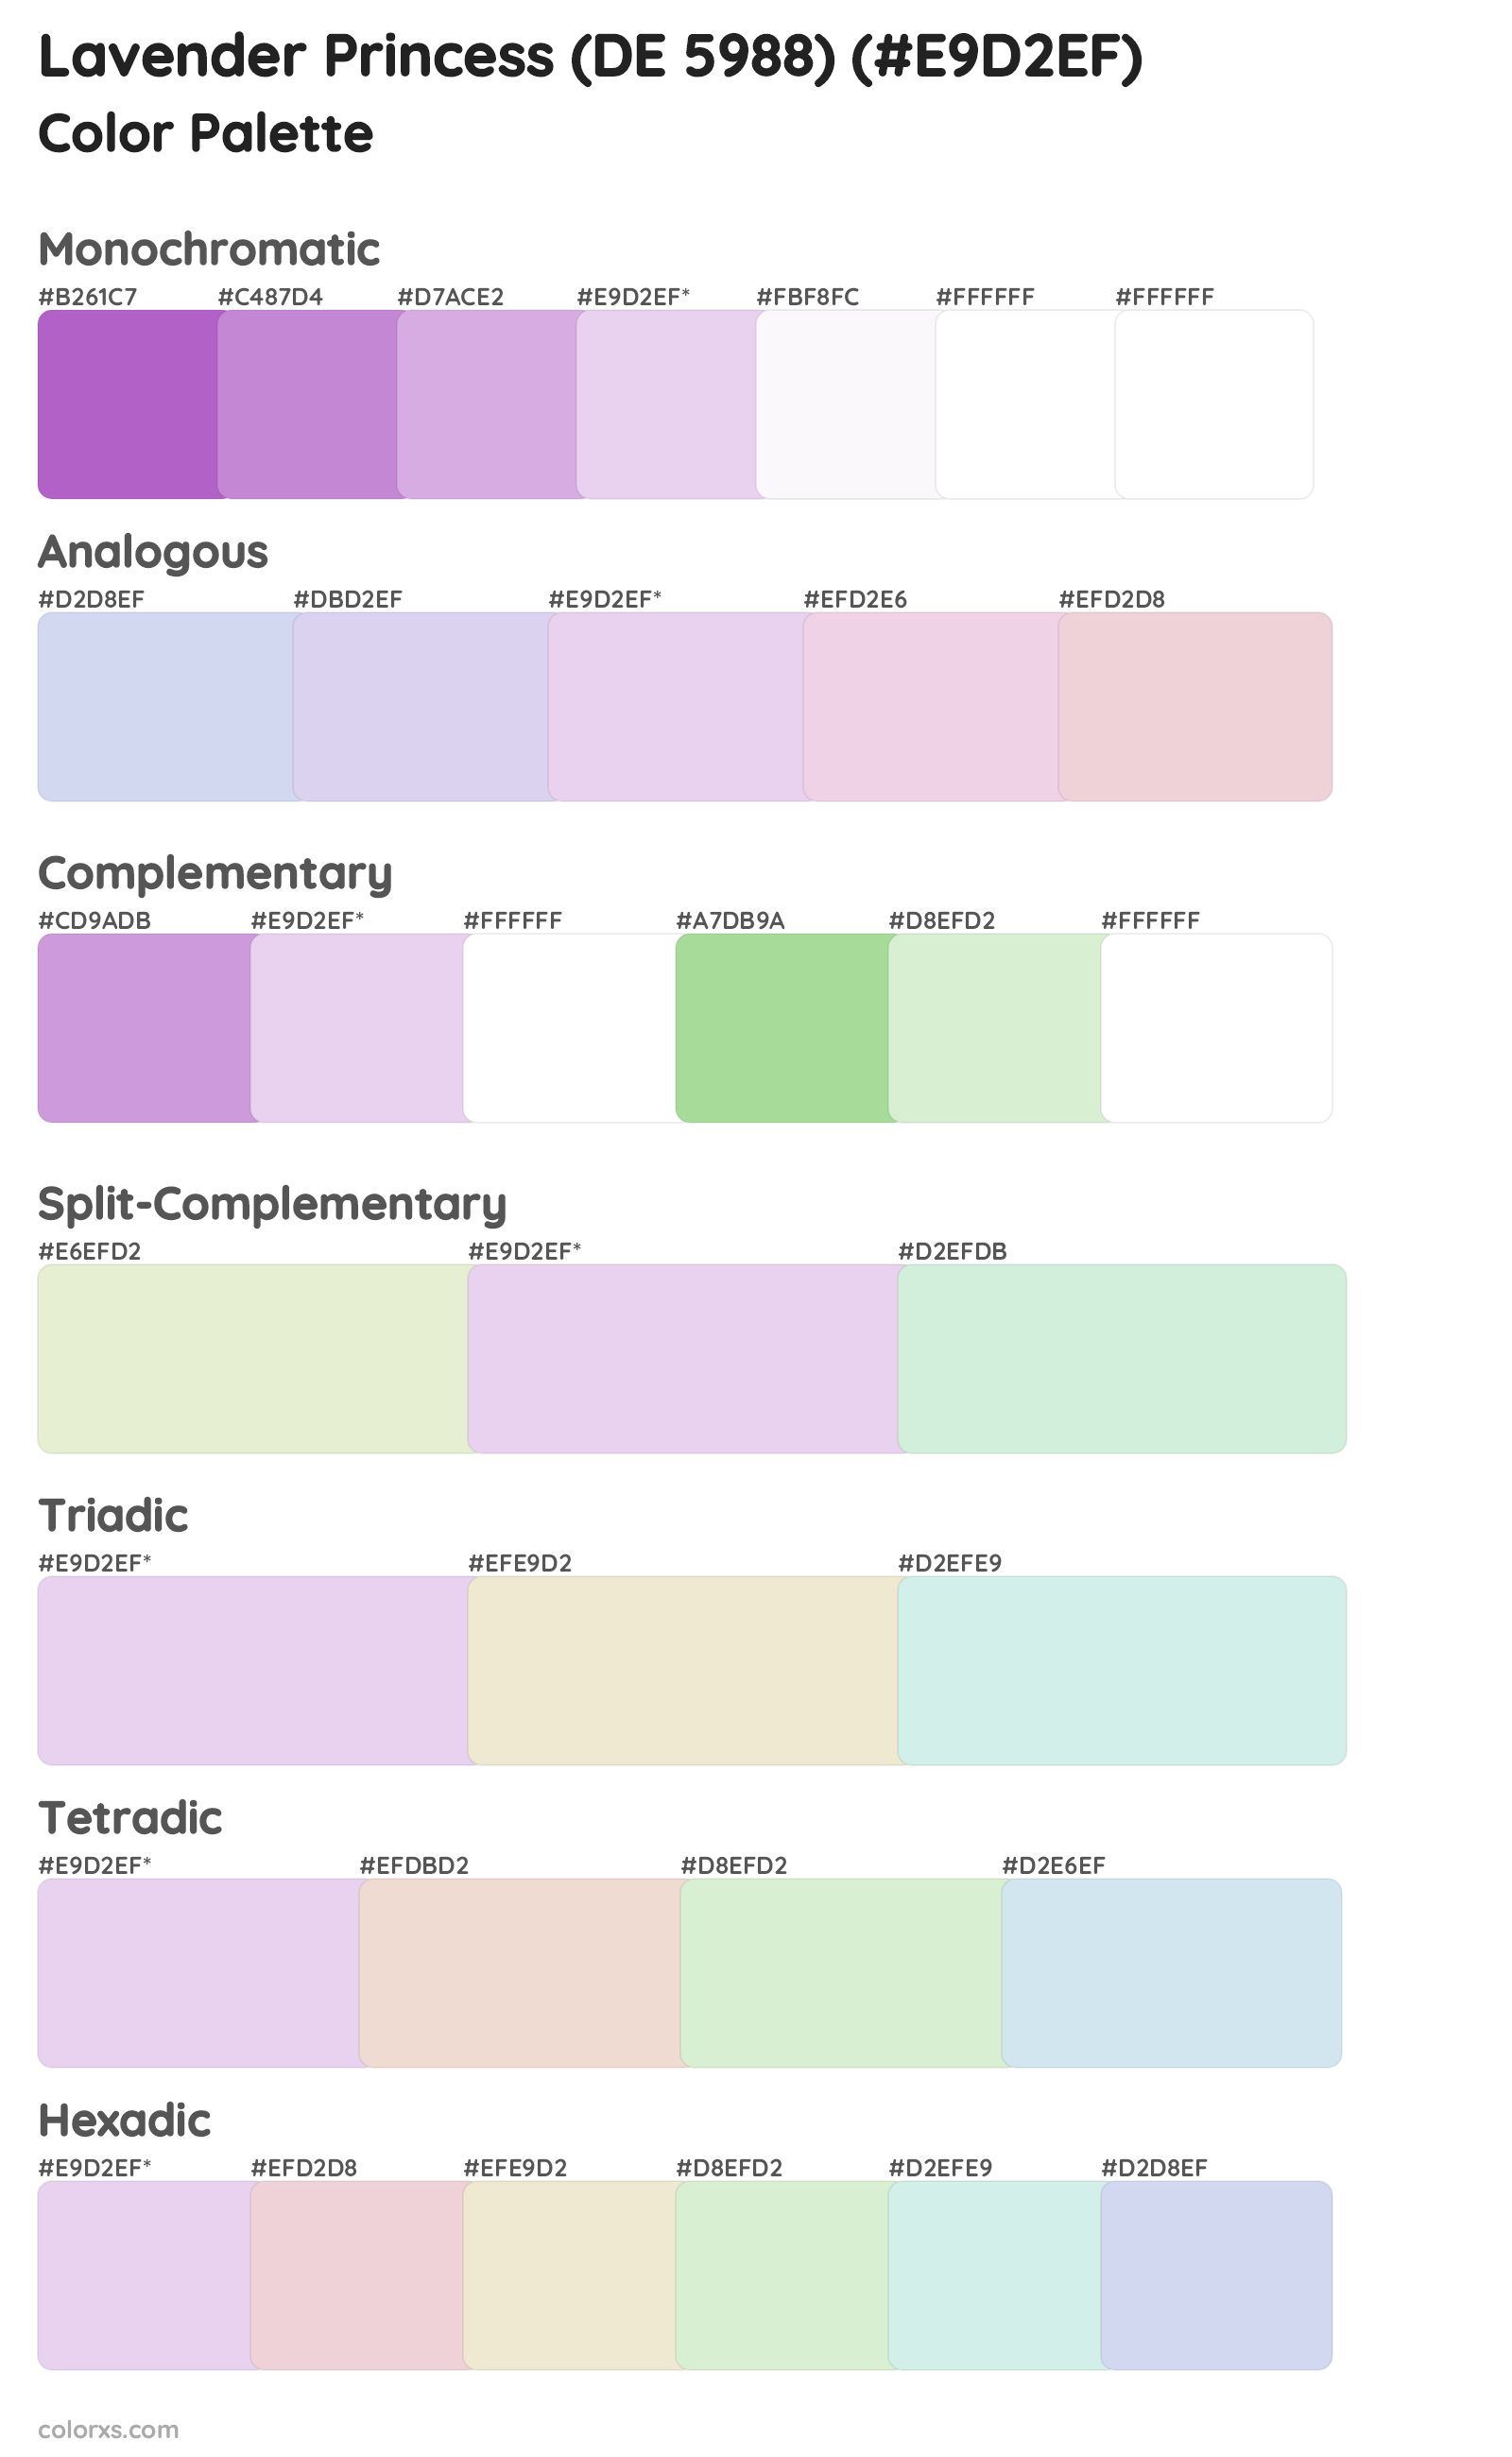 Lavender Princess (DE 5988) Color Scheme Palettes